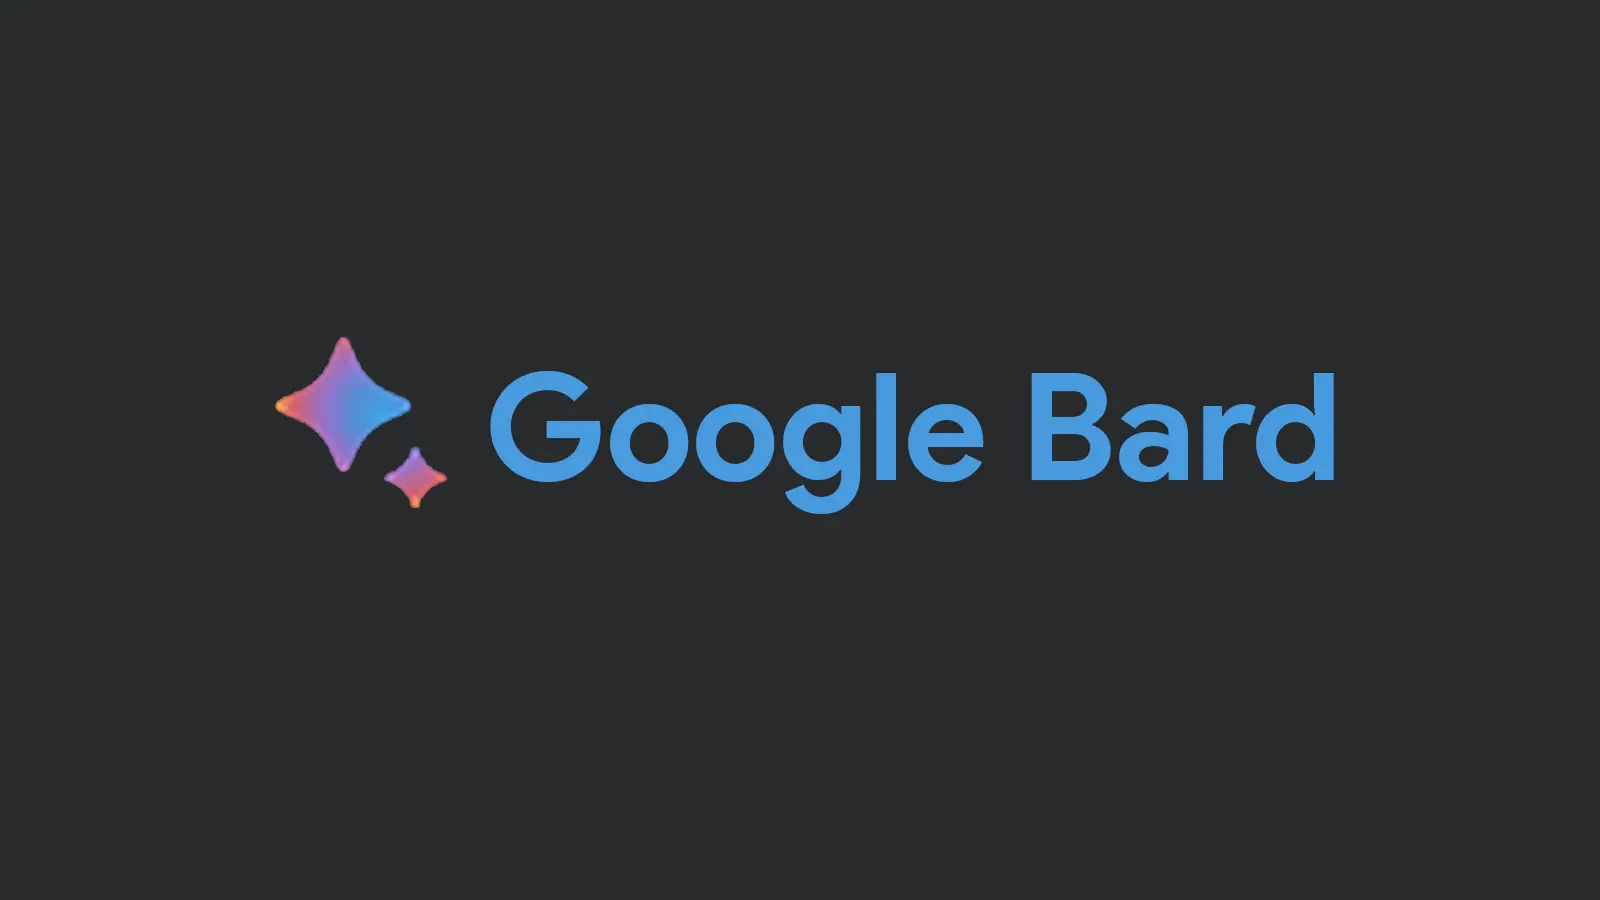 Logotipo do Google Bard